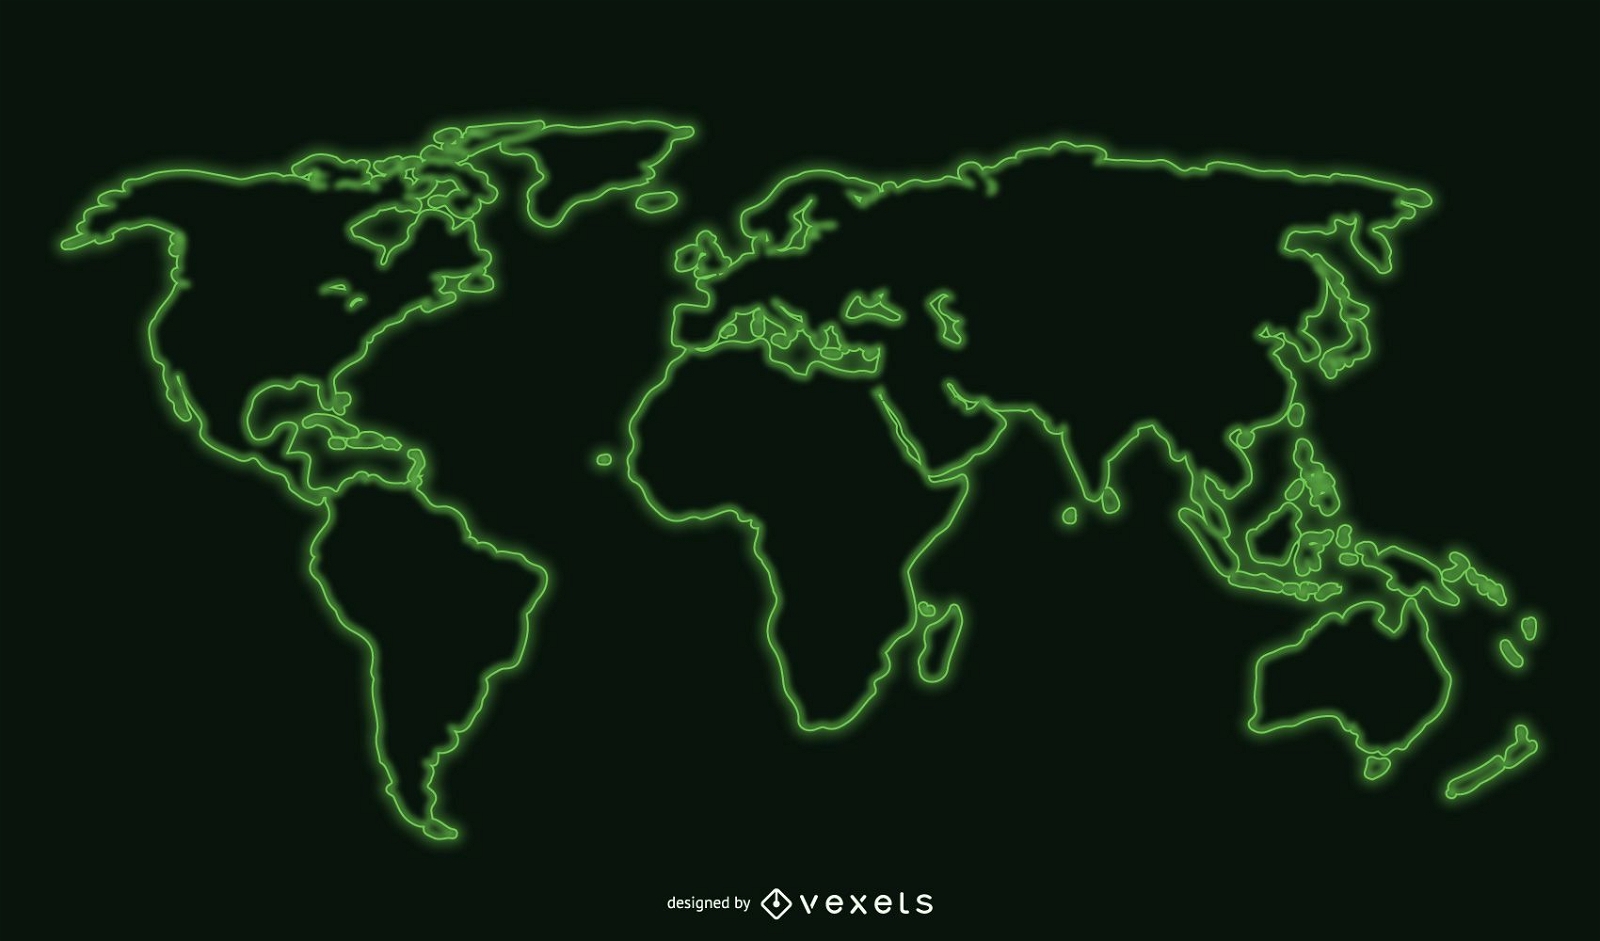 unique world map